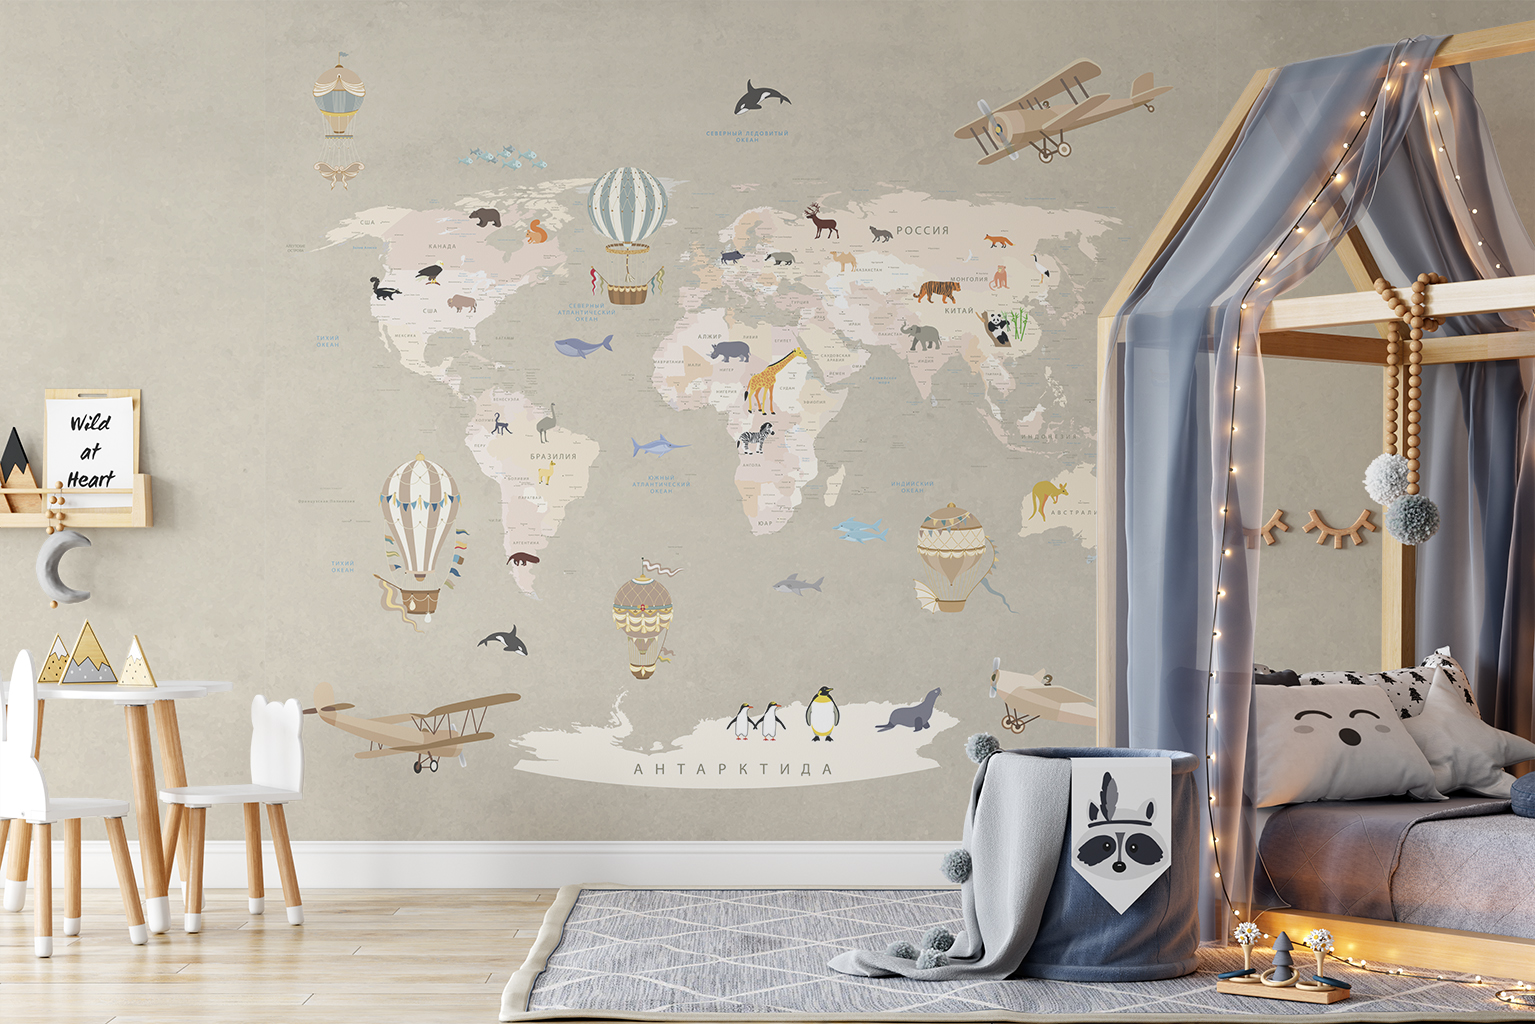 Фотообои Photostena Карта мира на русском с животными 3 x 2,7 м подарочная карта твой дом номинал 3000